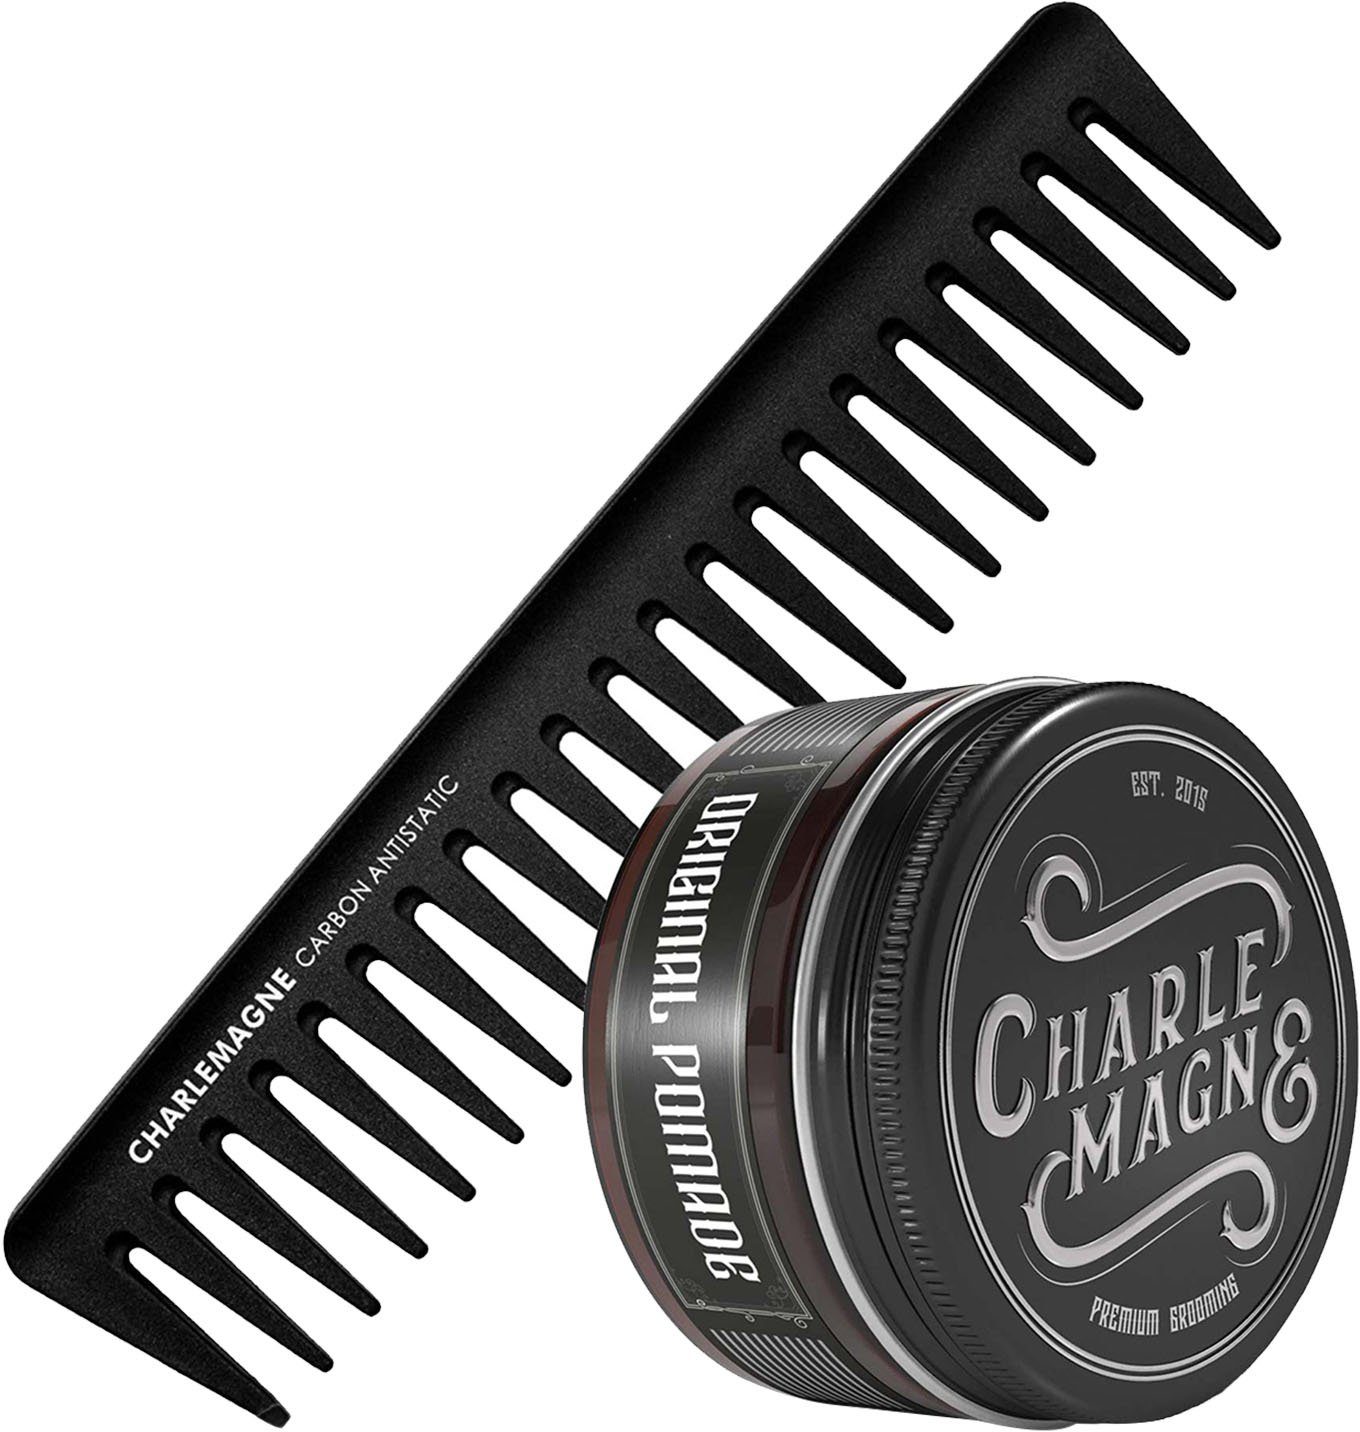 CHARLEMAGNE Haarpflege-Set The Essentials, 2-tlg. OG's